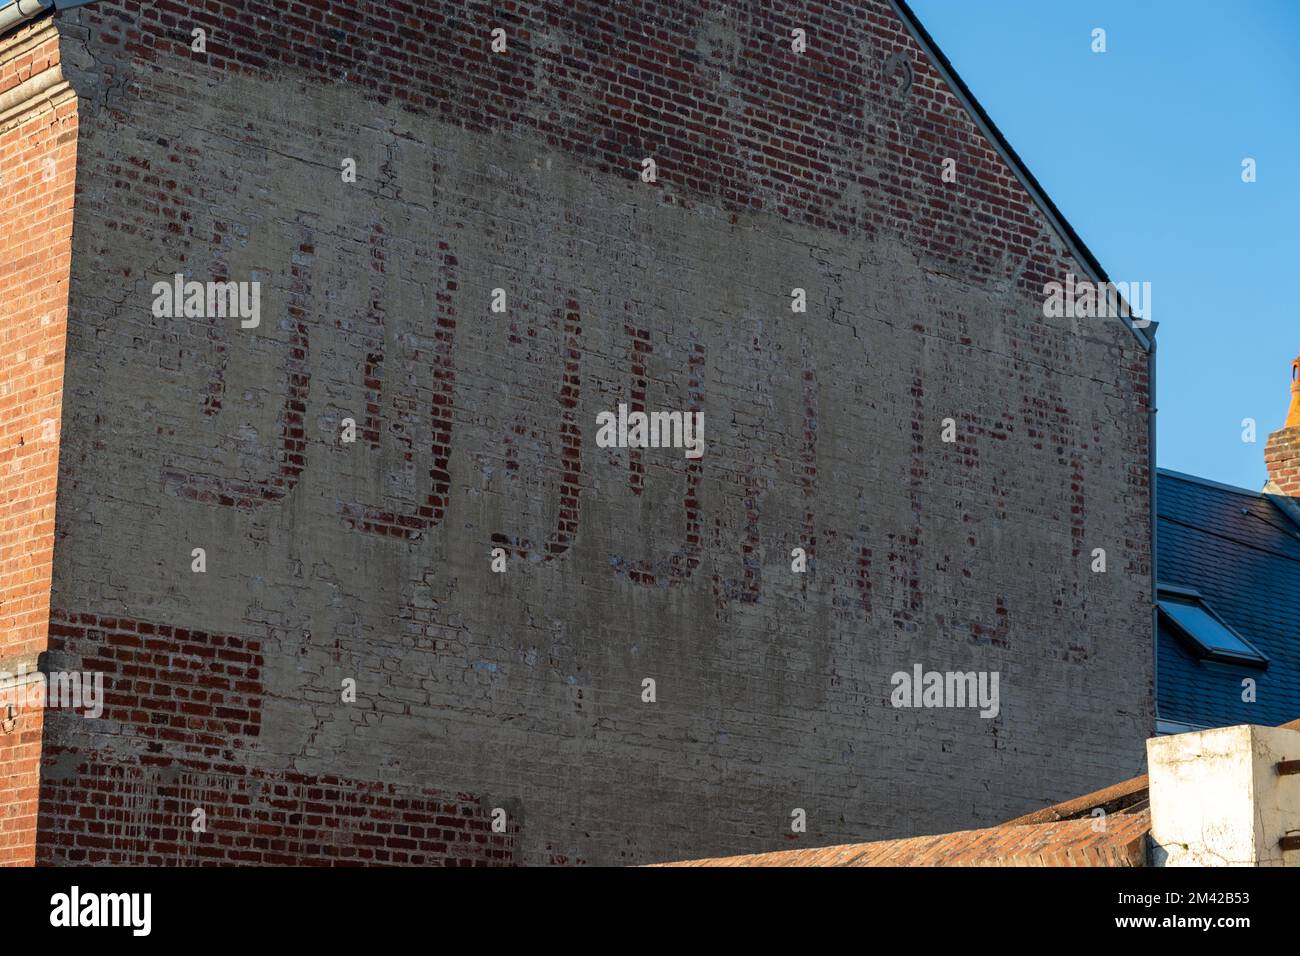 Verblichene Anzeige für Dubonnet an der Seite eines Gebäudes. Stockfoto